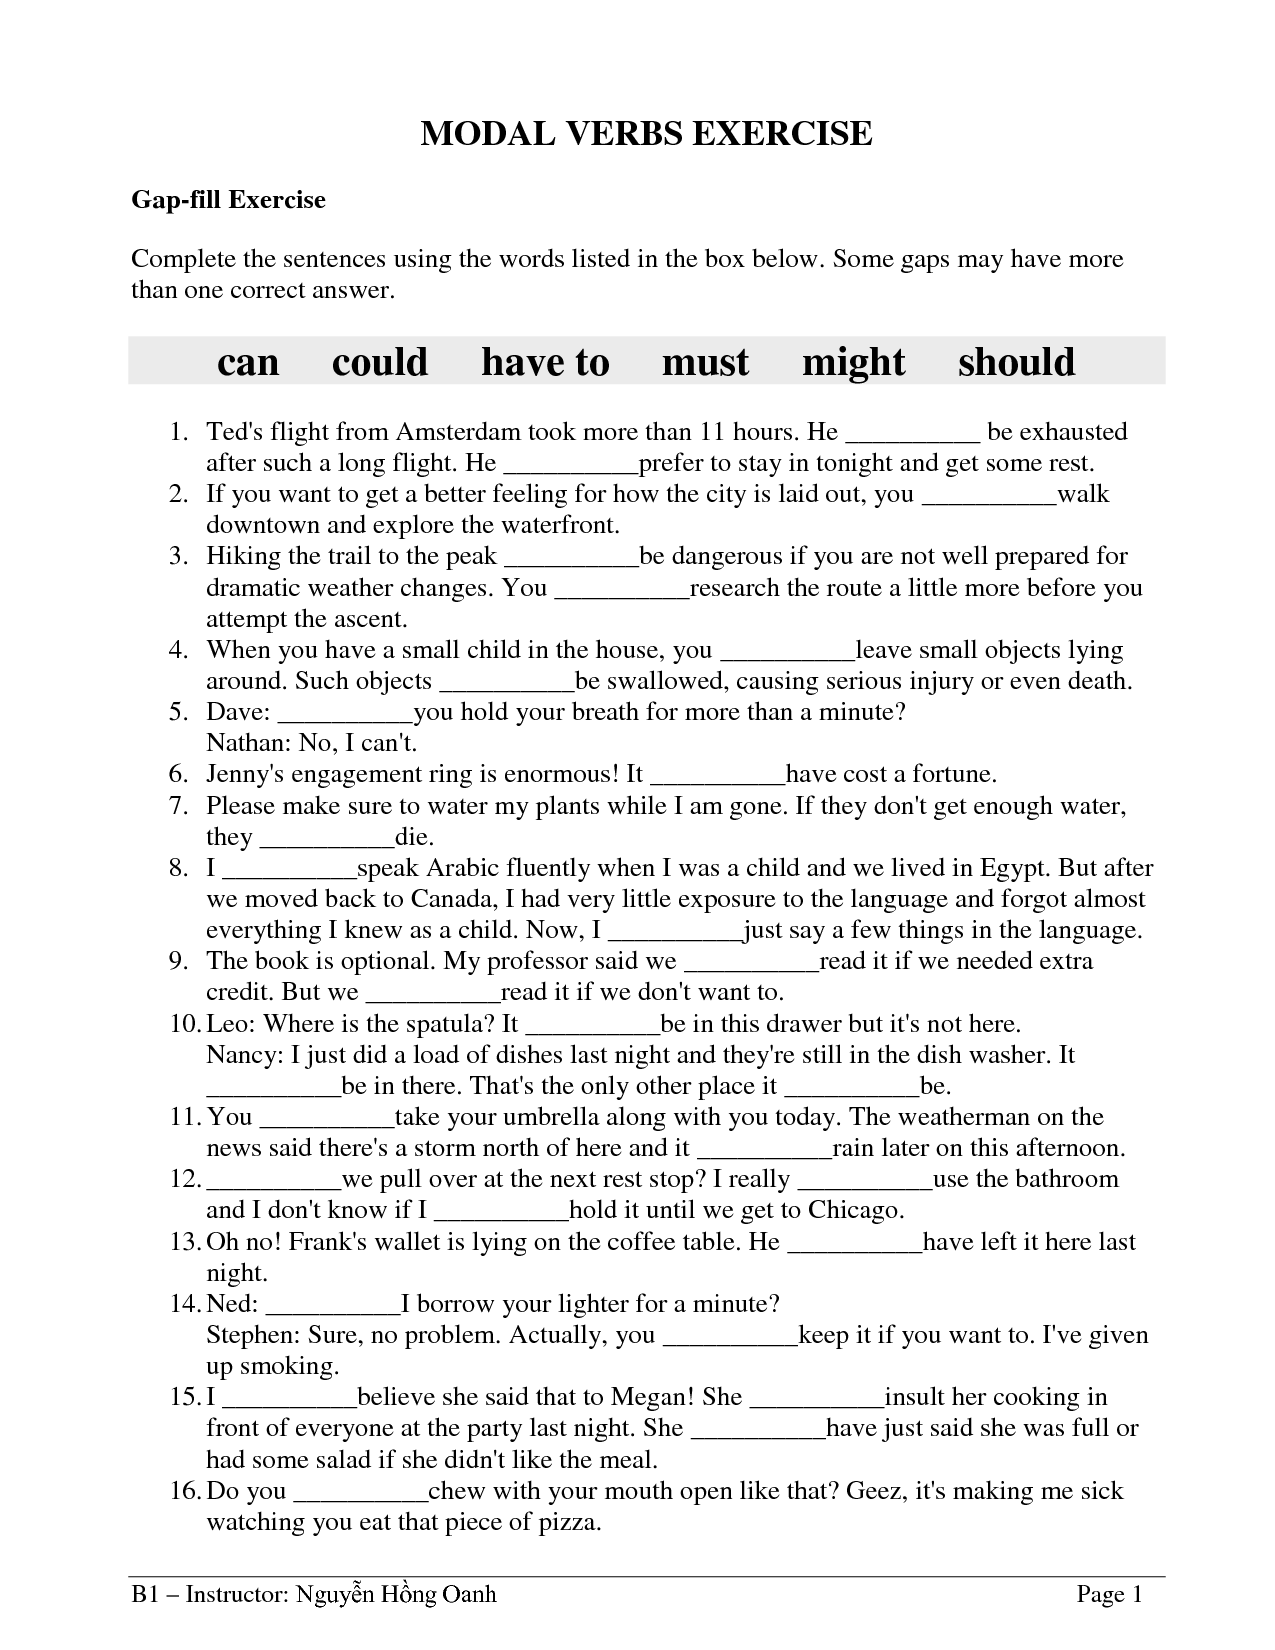 Worksheet For Class 7 English Grammar Modals